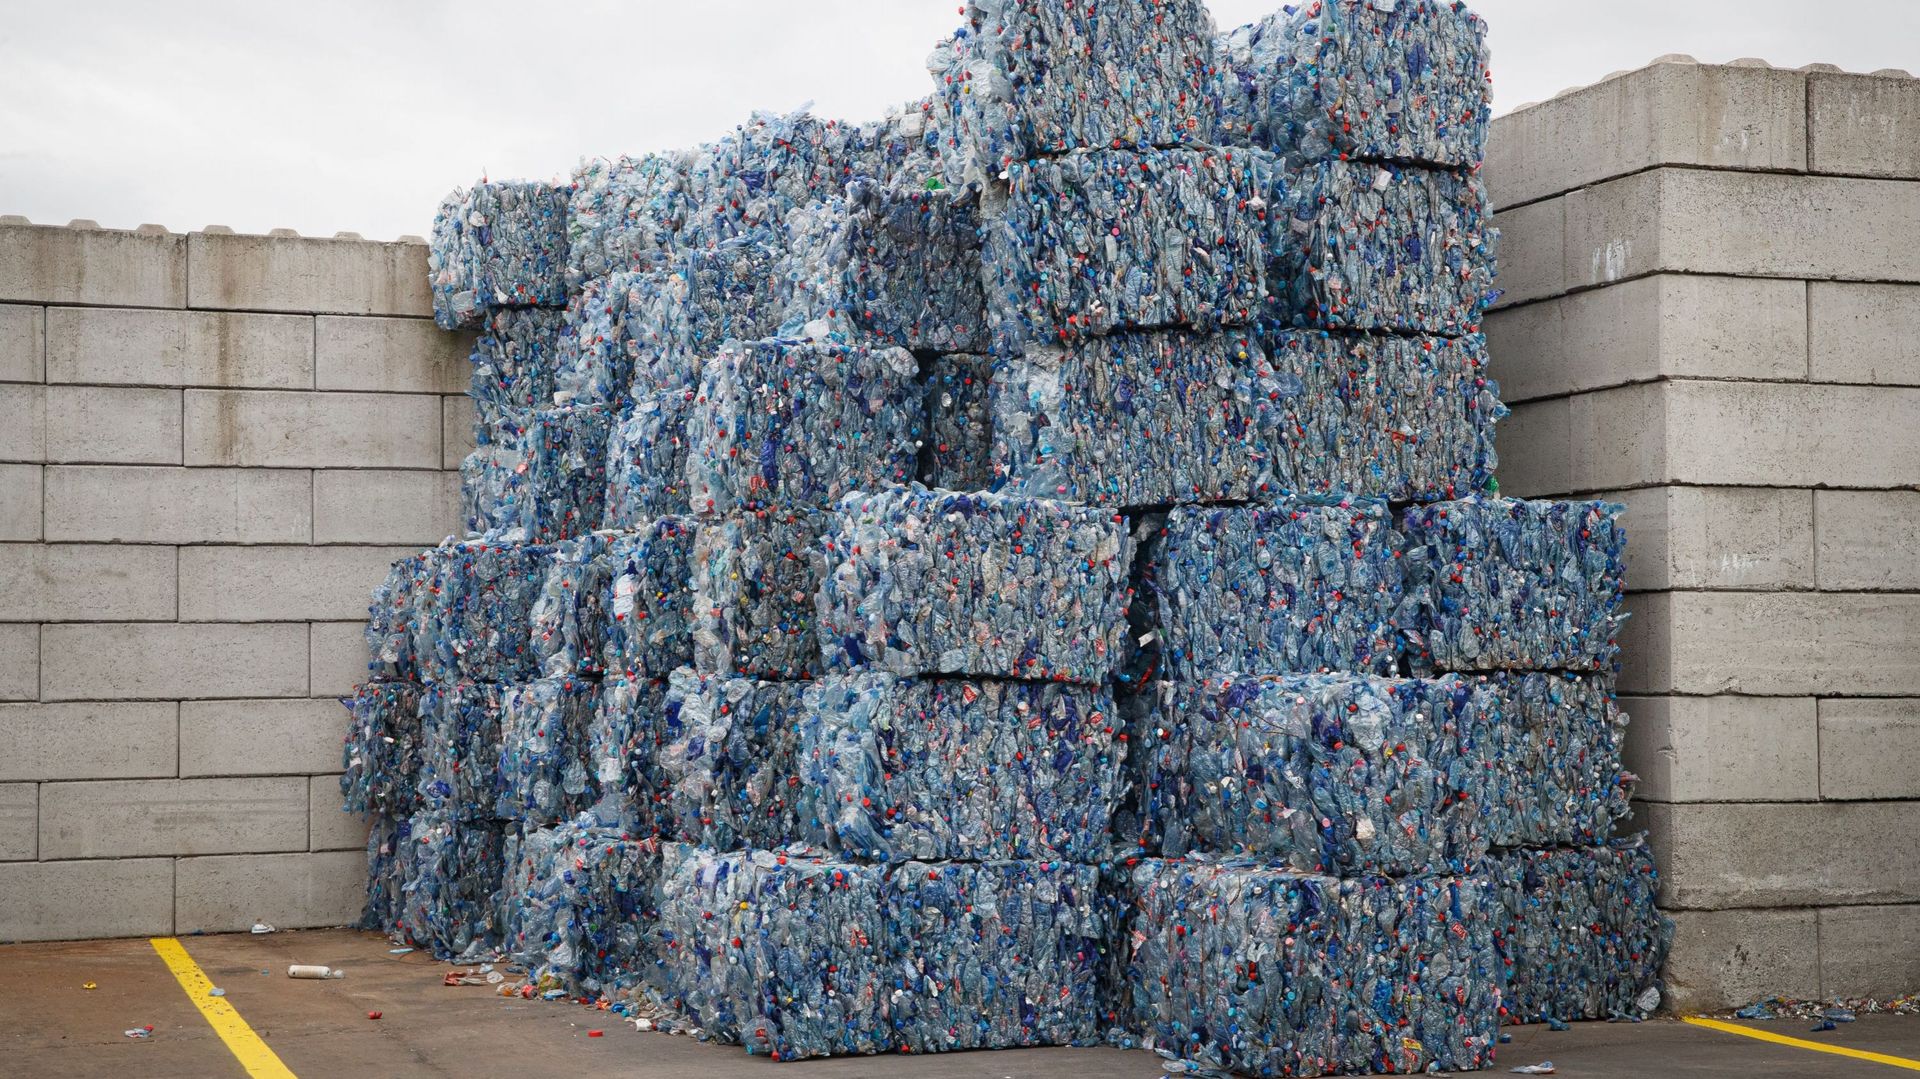 Trois nouveaux centres de recyclage verront le jour en Belgique